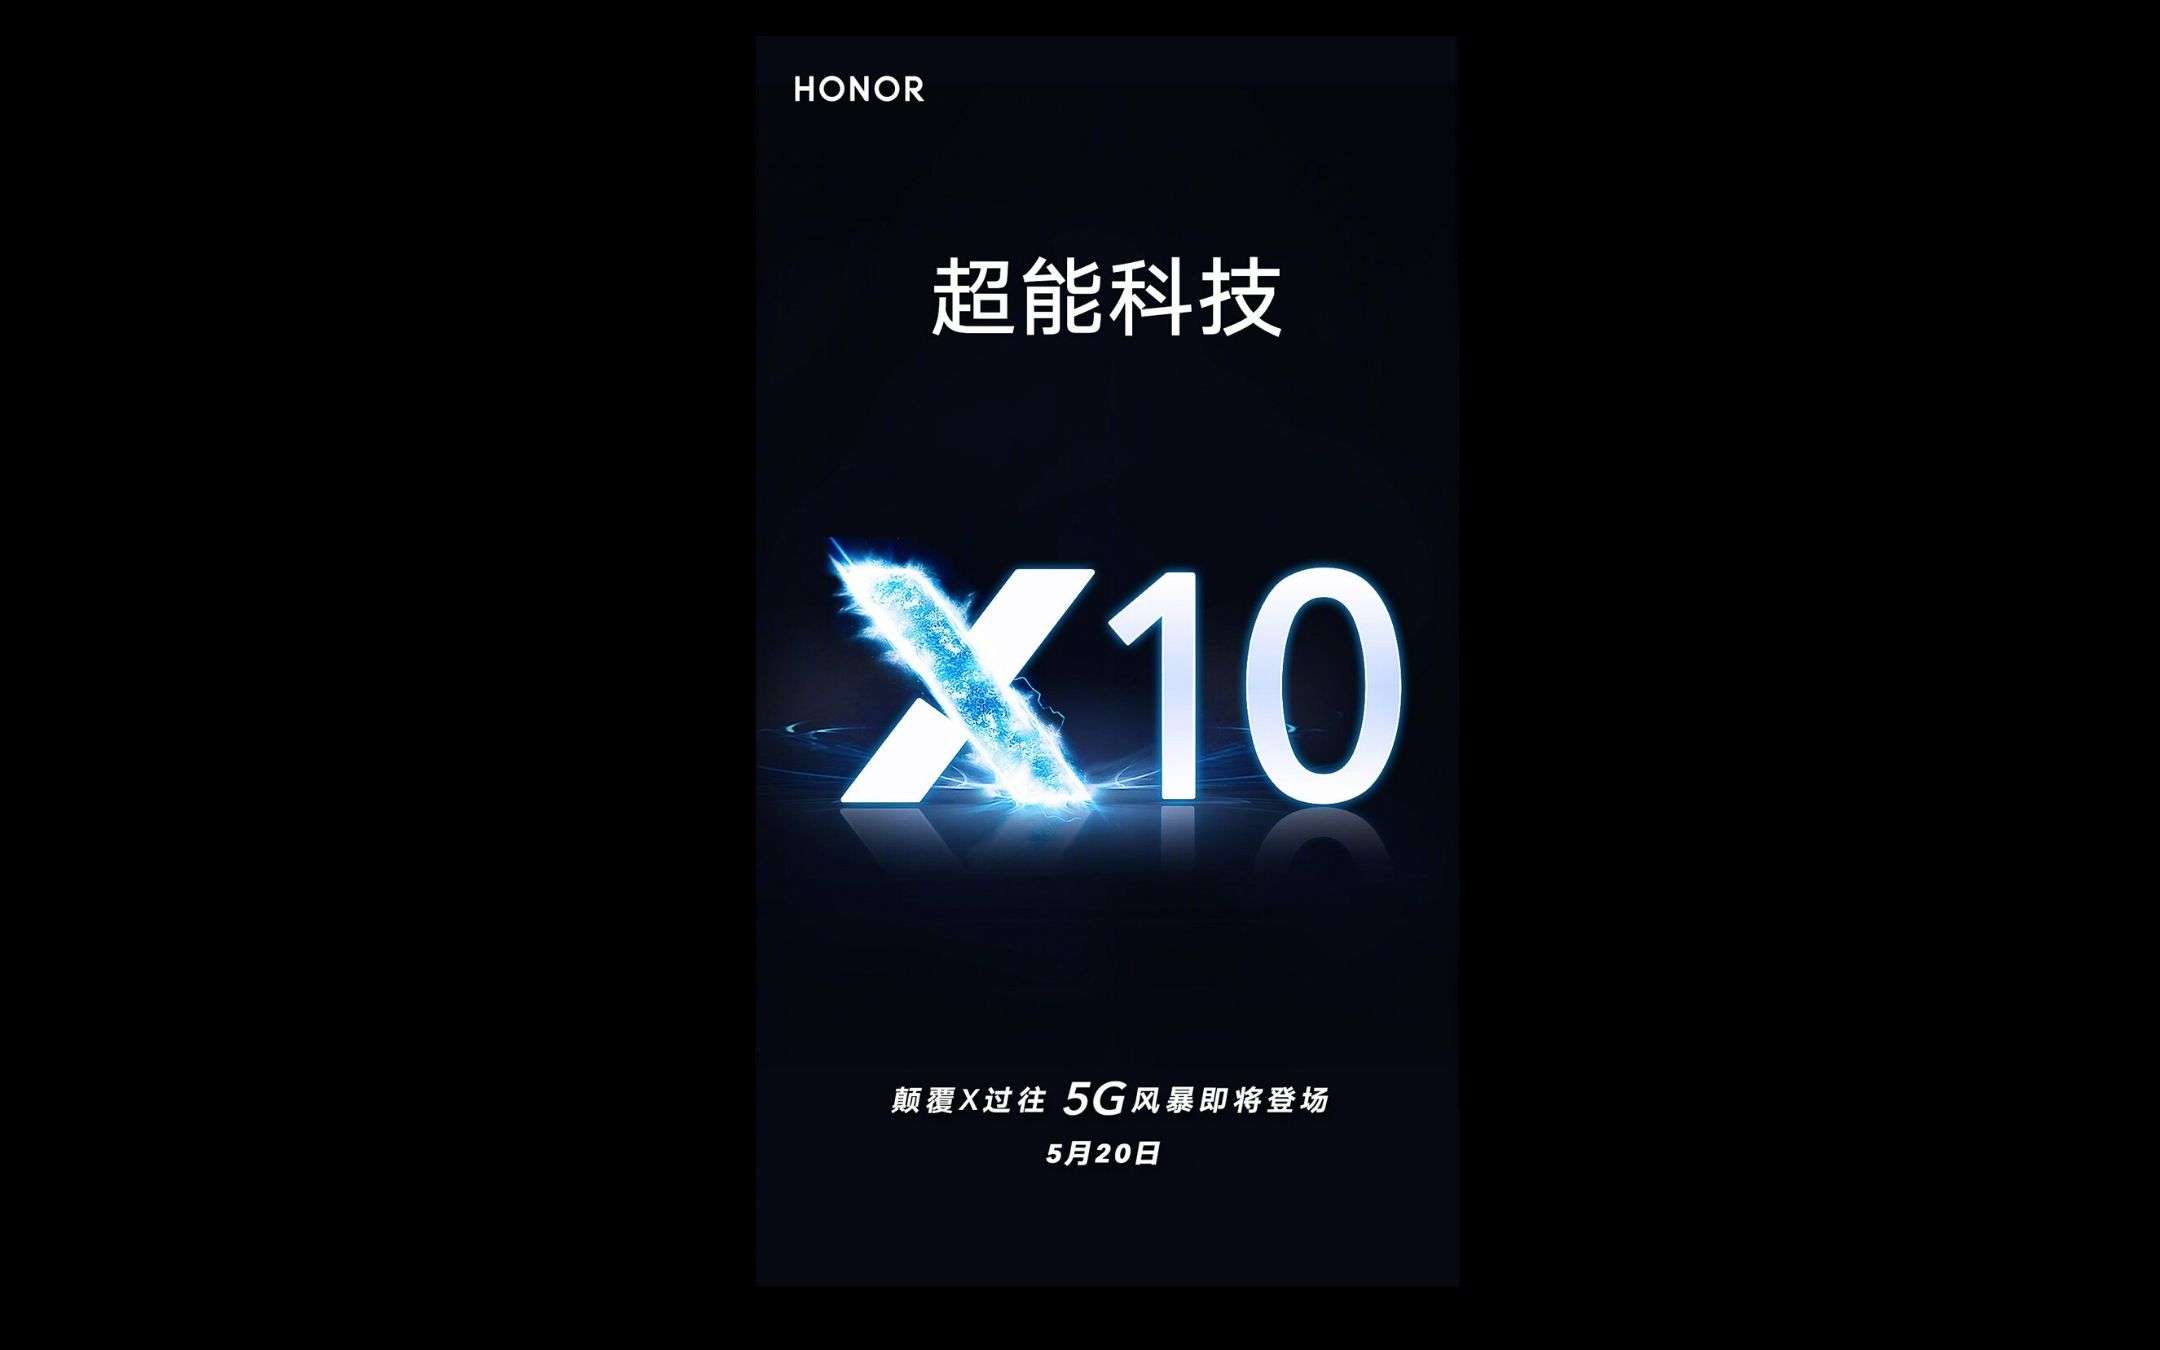 HONOR X10: previsto il debutto per il 20 maggio